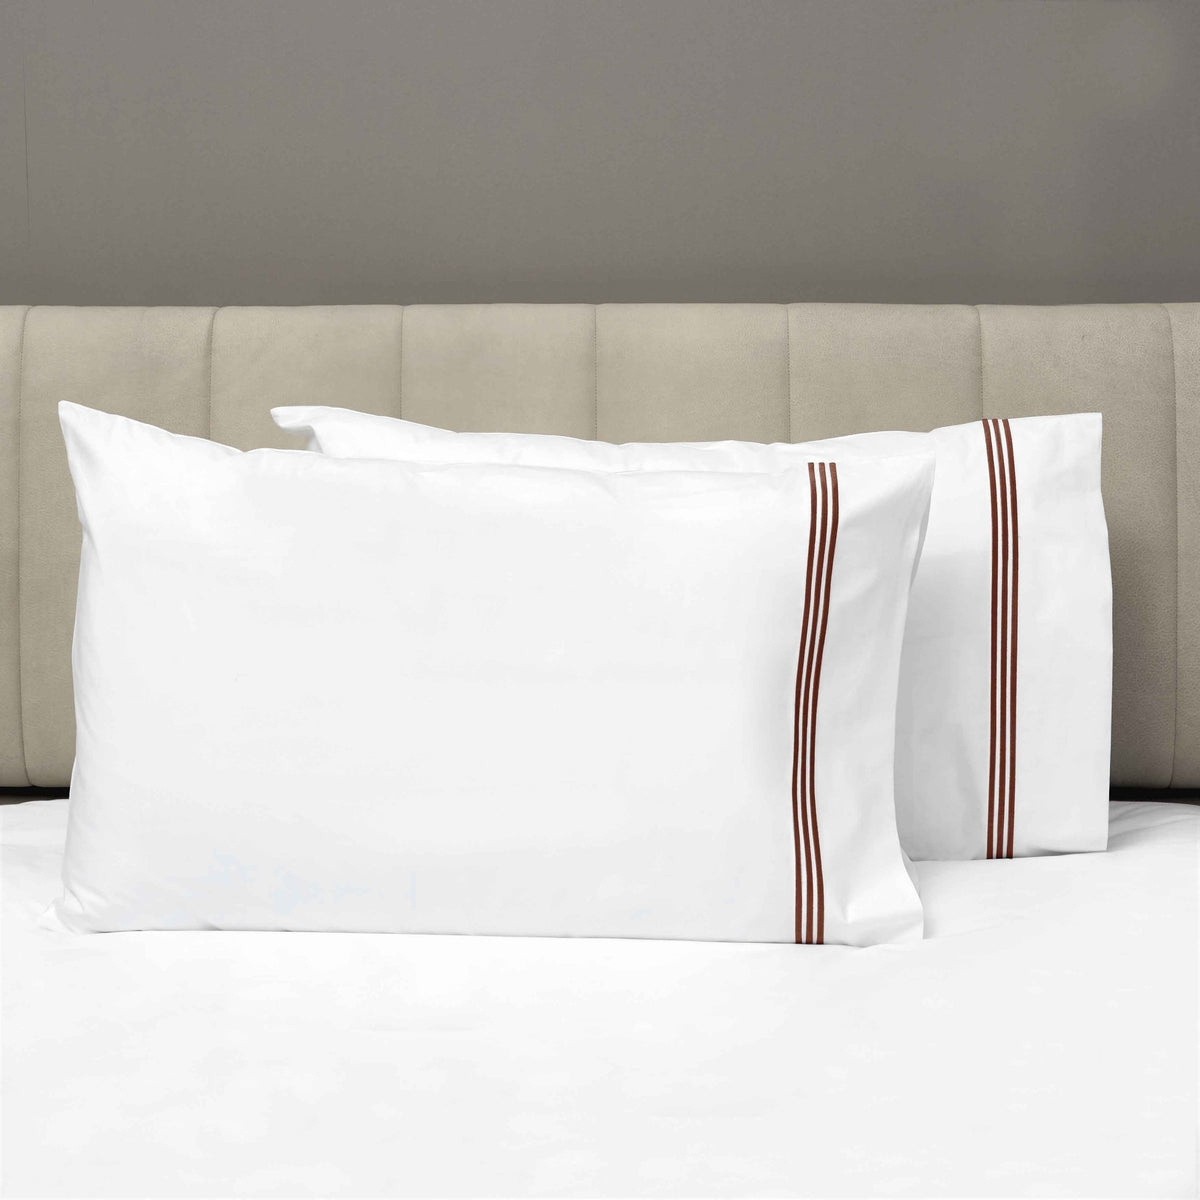 Pair of Pillowcases of Signoria Platinum Percale Bedding in White/Plum Color